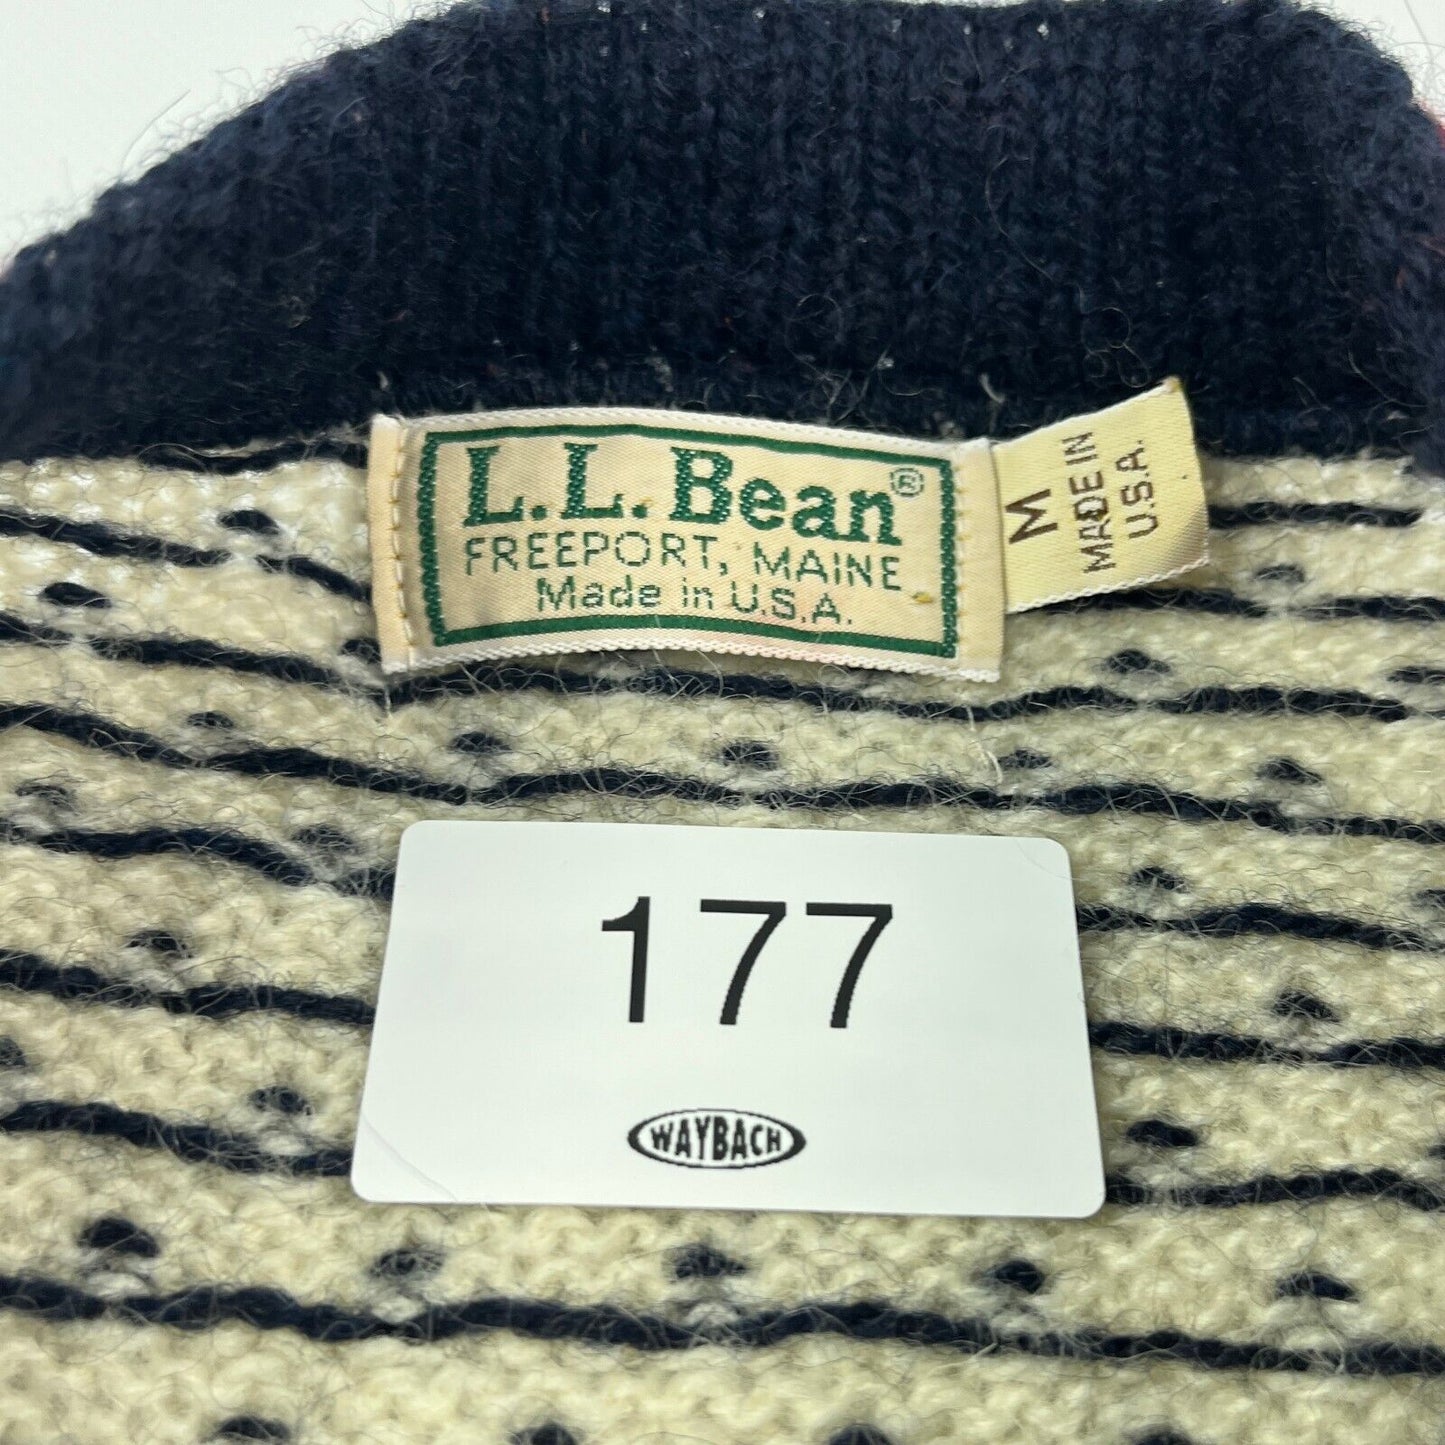 VINTAGE 90s L.L Bean Pattern Knit Cardigan Sweater sz Small Men